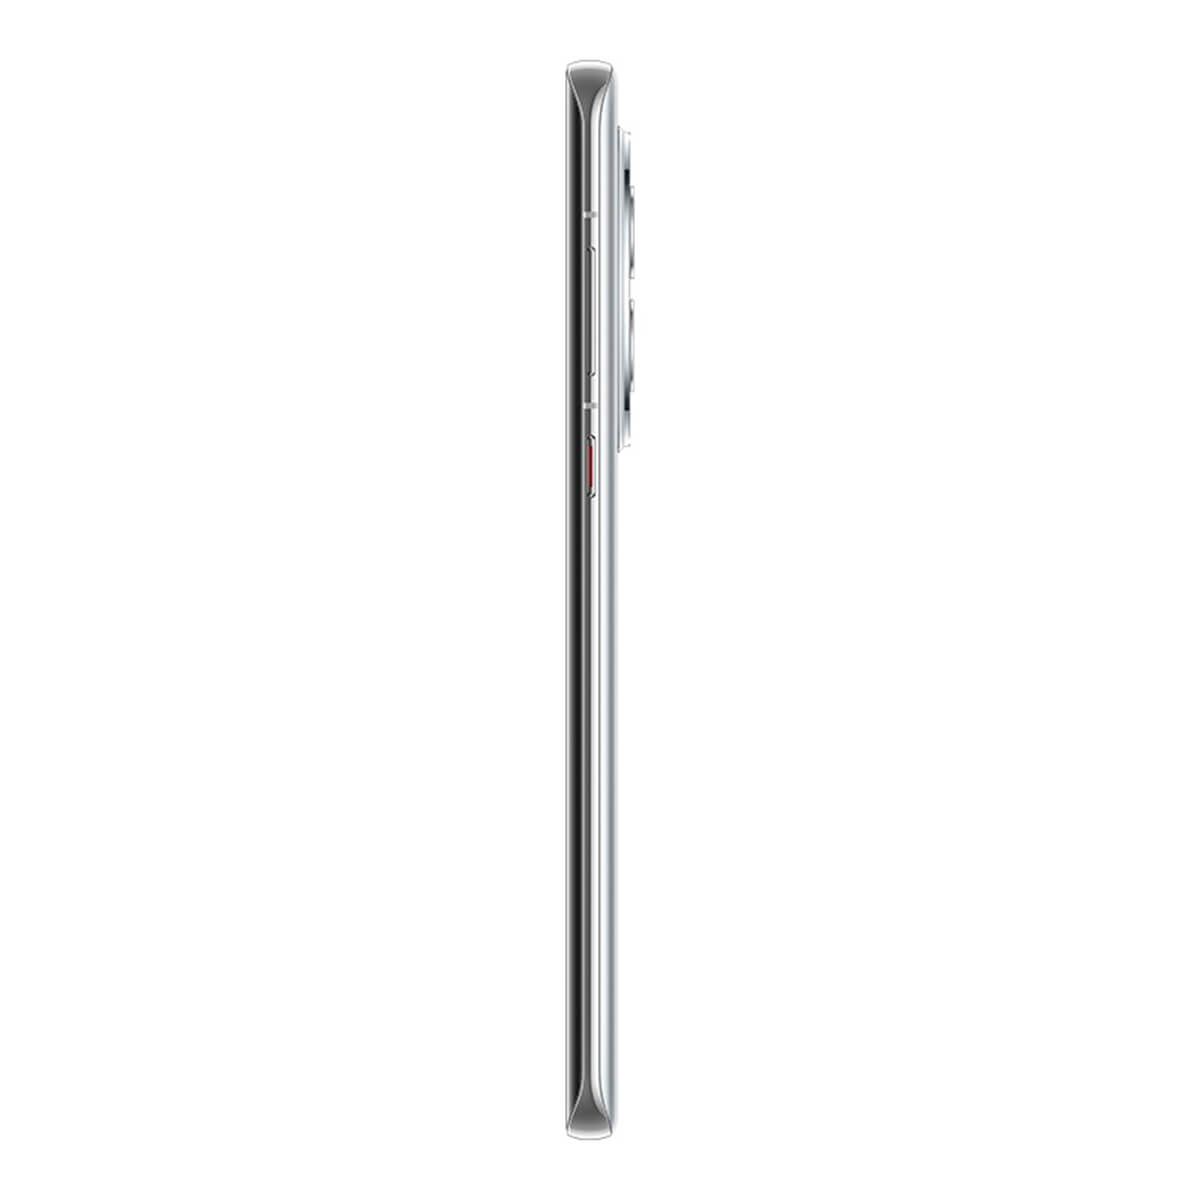 Huawei Mate 50 Pro 8GB/256GB Plata (Silver) Dual SIM DCO-LX9